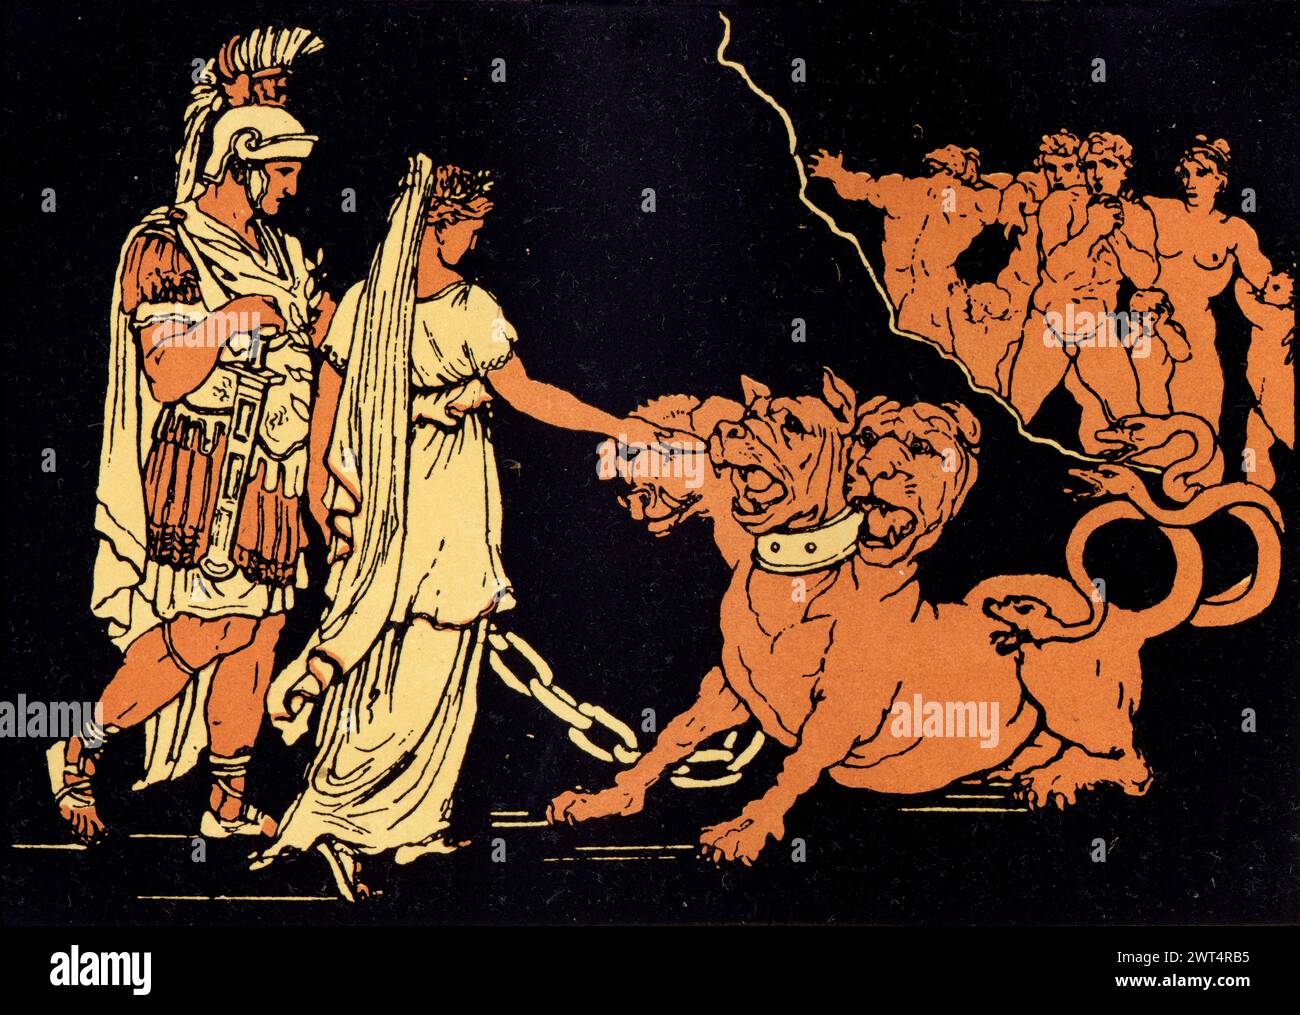 Illustrazione d'epoca mitologia romana, Cerbero, il segugio di Ade, Eneide un poema epico latino che racconta la leggendaria storia di Enea, un troiano che fl Foto Stock